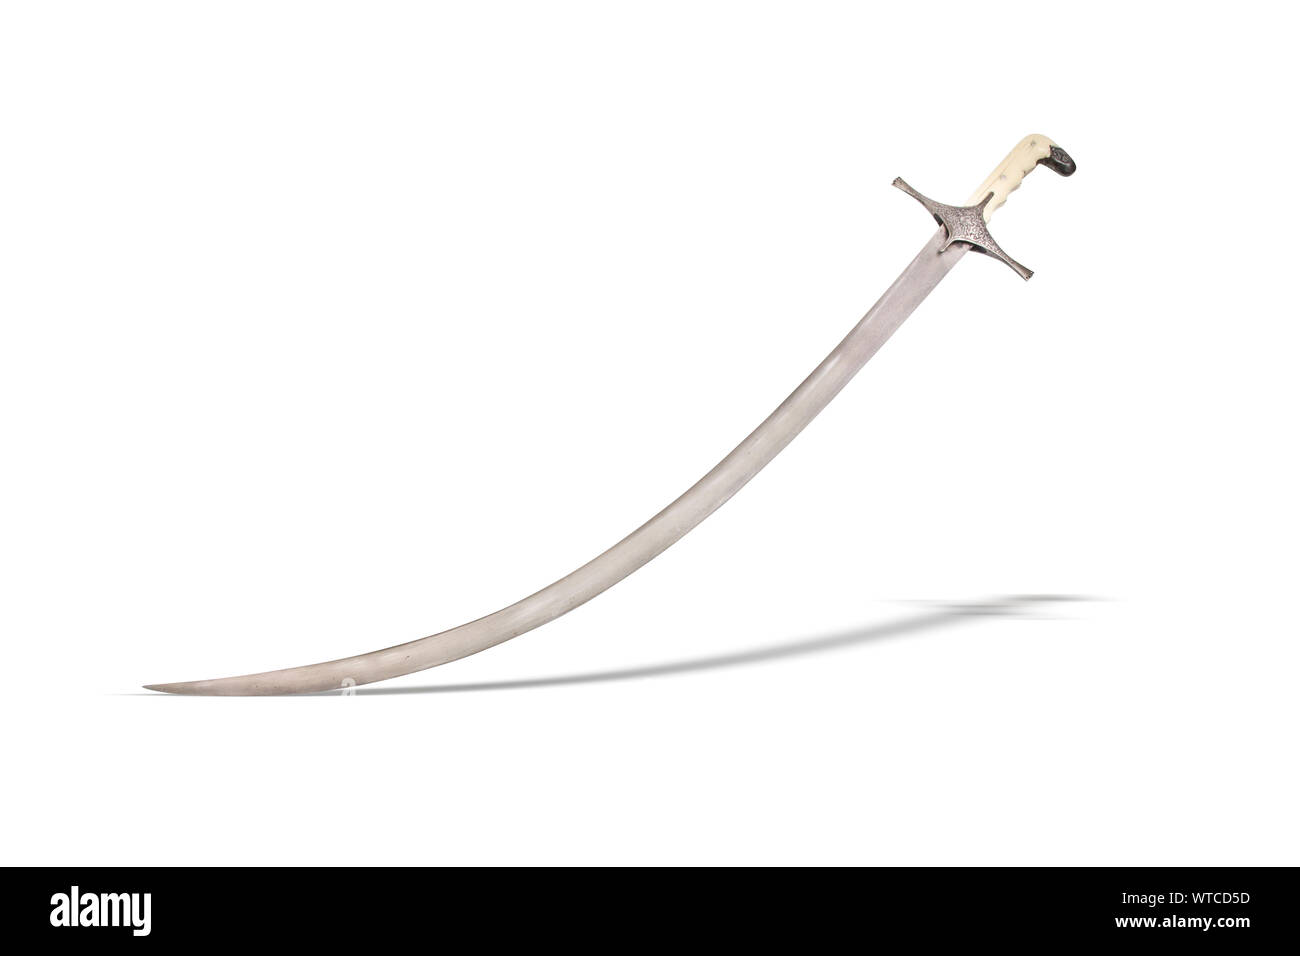 Georgische shamshir Schwert des 19. Jahrhunderts. Geschnitzte griff Skalen, liniert Metall Knauf und Kreuz. Stockfoto